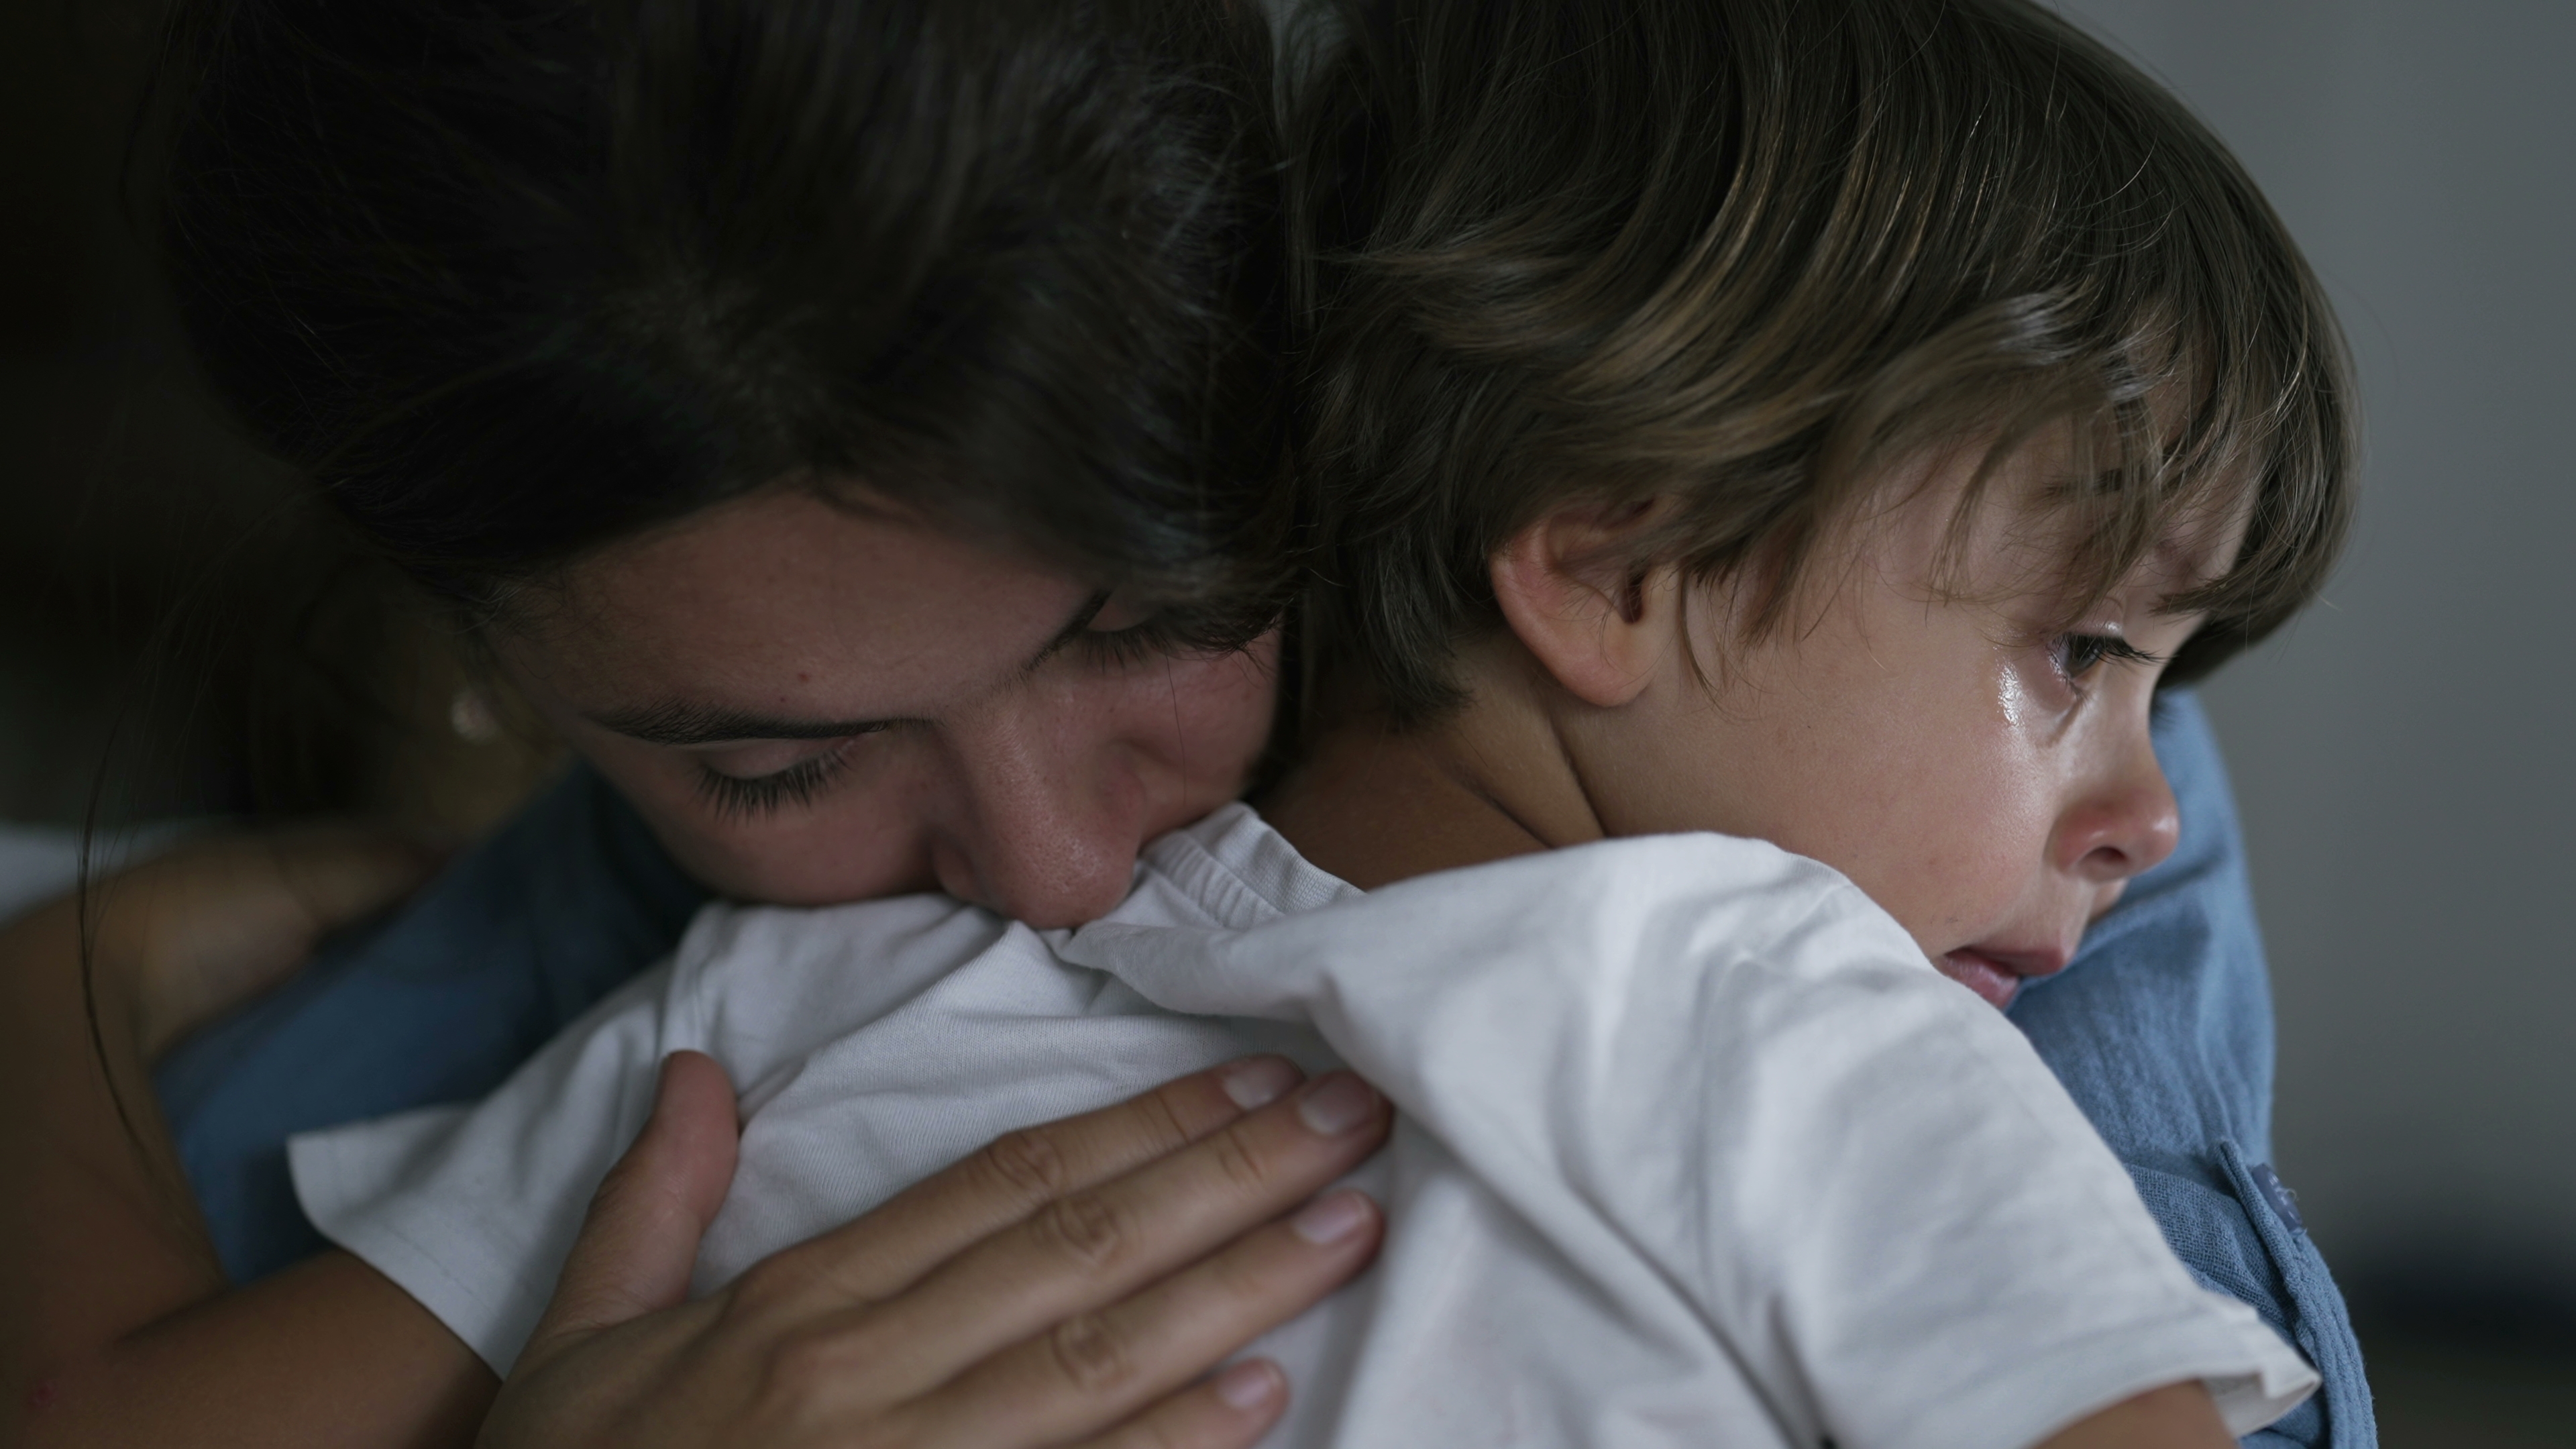 Una madre abraza a su hijo llorando | Fuente: Shutterstock.com